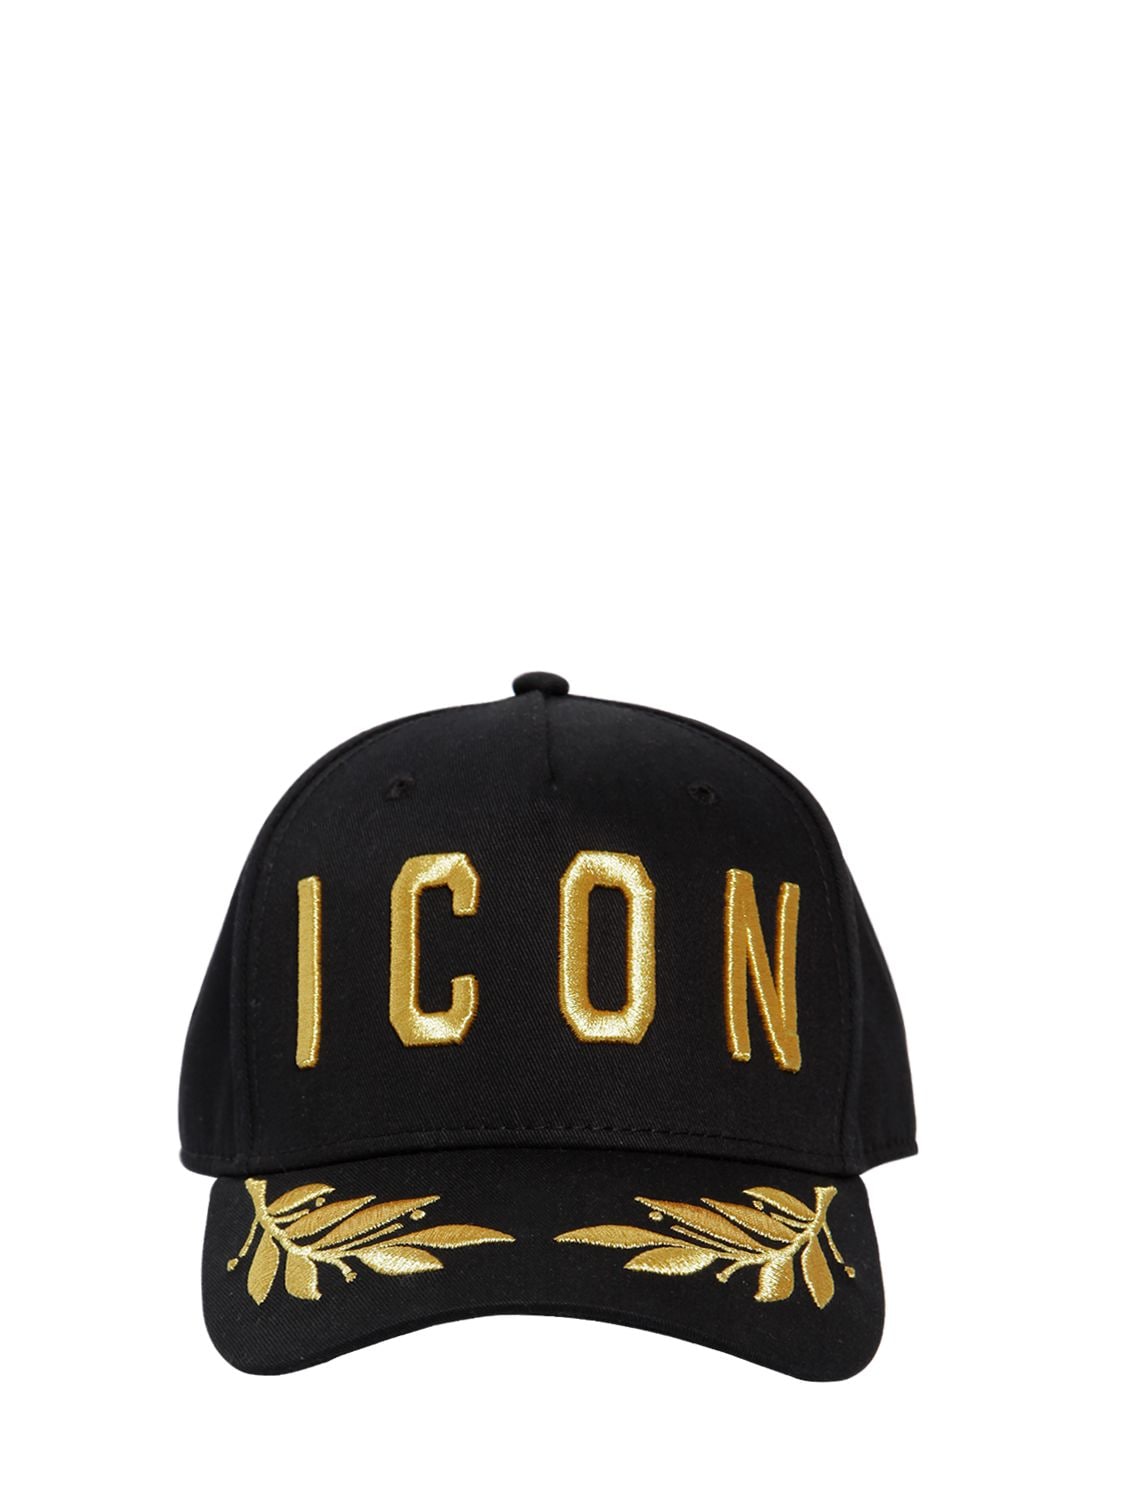 icon cap gold